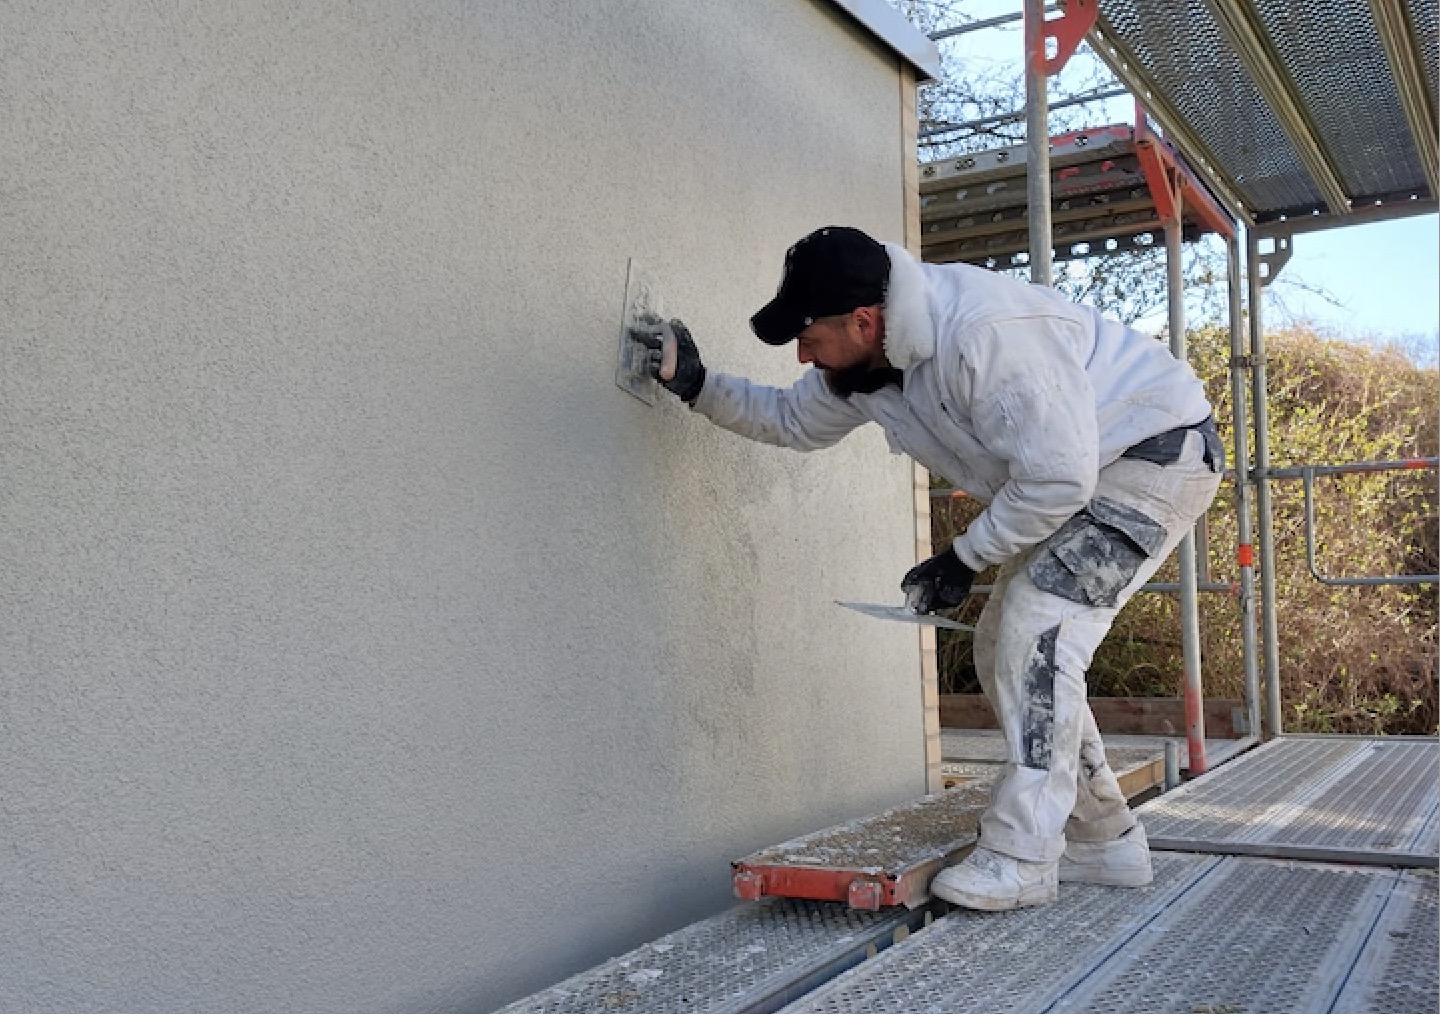 Fachmännische Fassadengestaltung mit Putzarbeiten (Außenputze) durch einen Mitarbeiter von Stuckateur Jungkunst aus Bochum